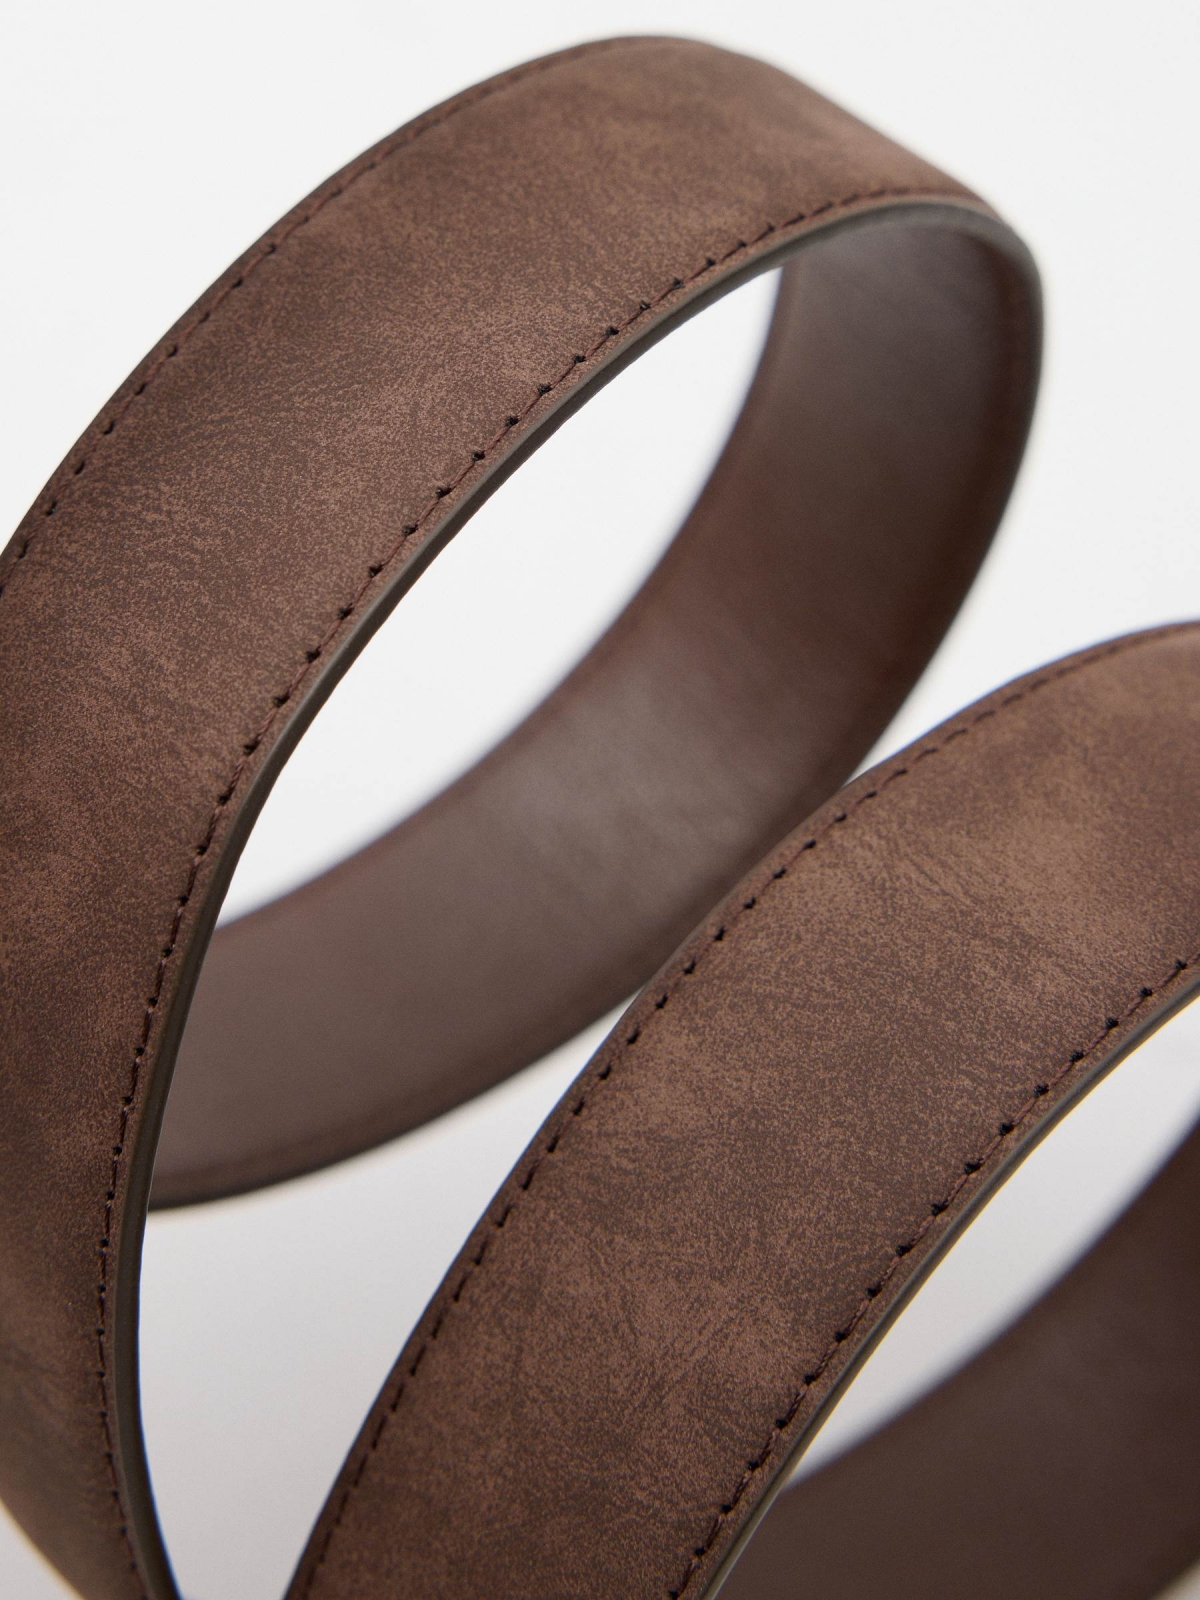 Cinturão fino de couro sintético castanho marrom vista detalhe